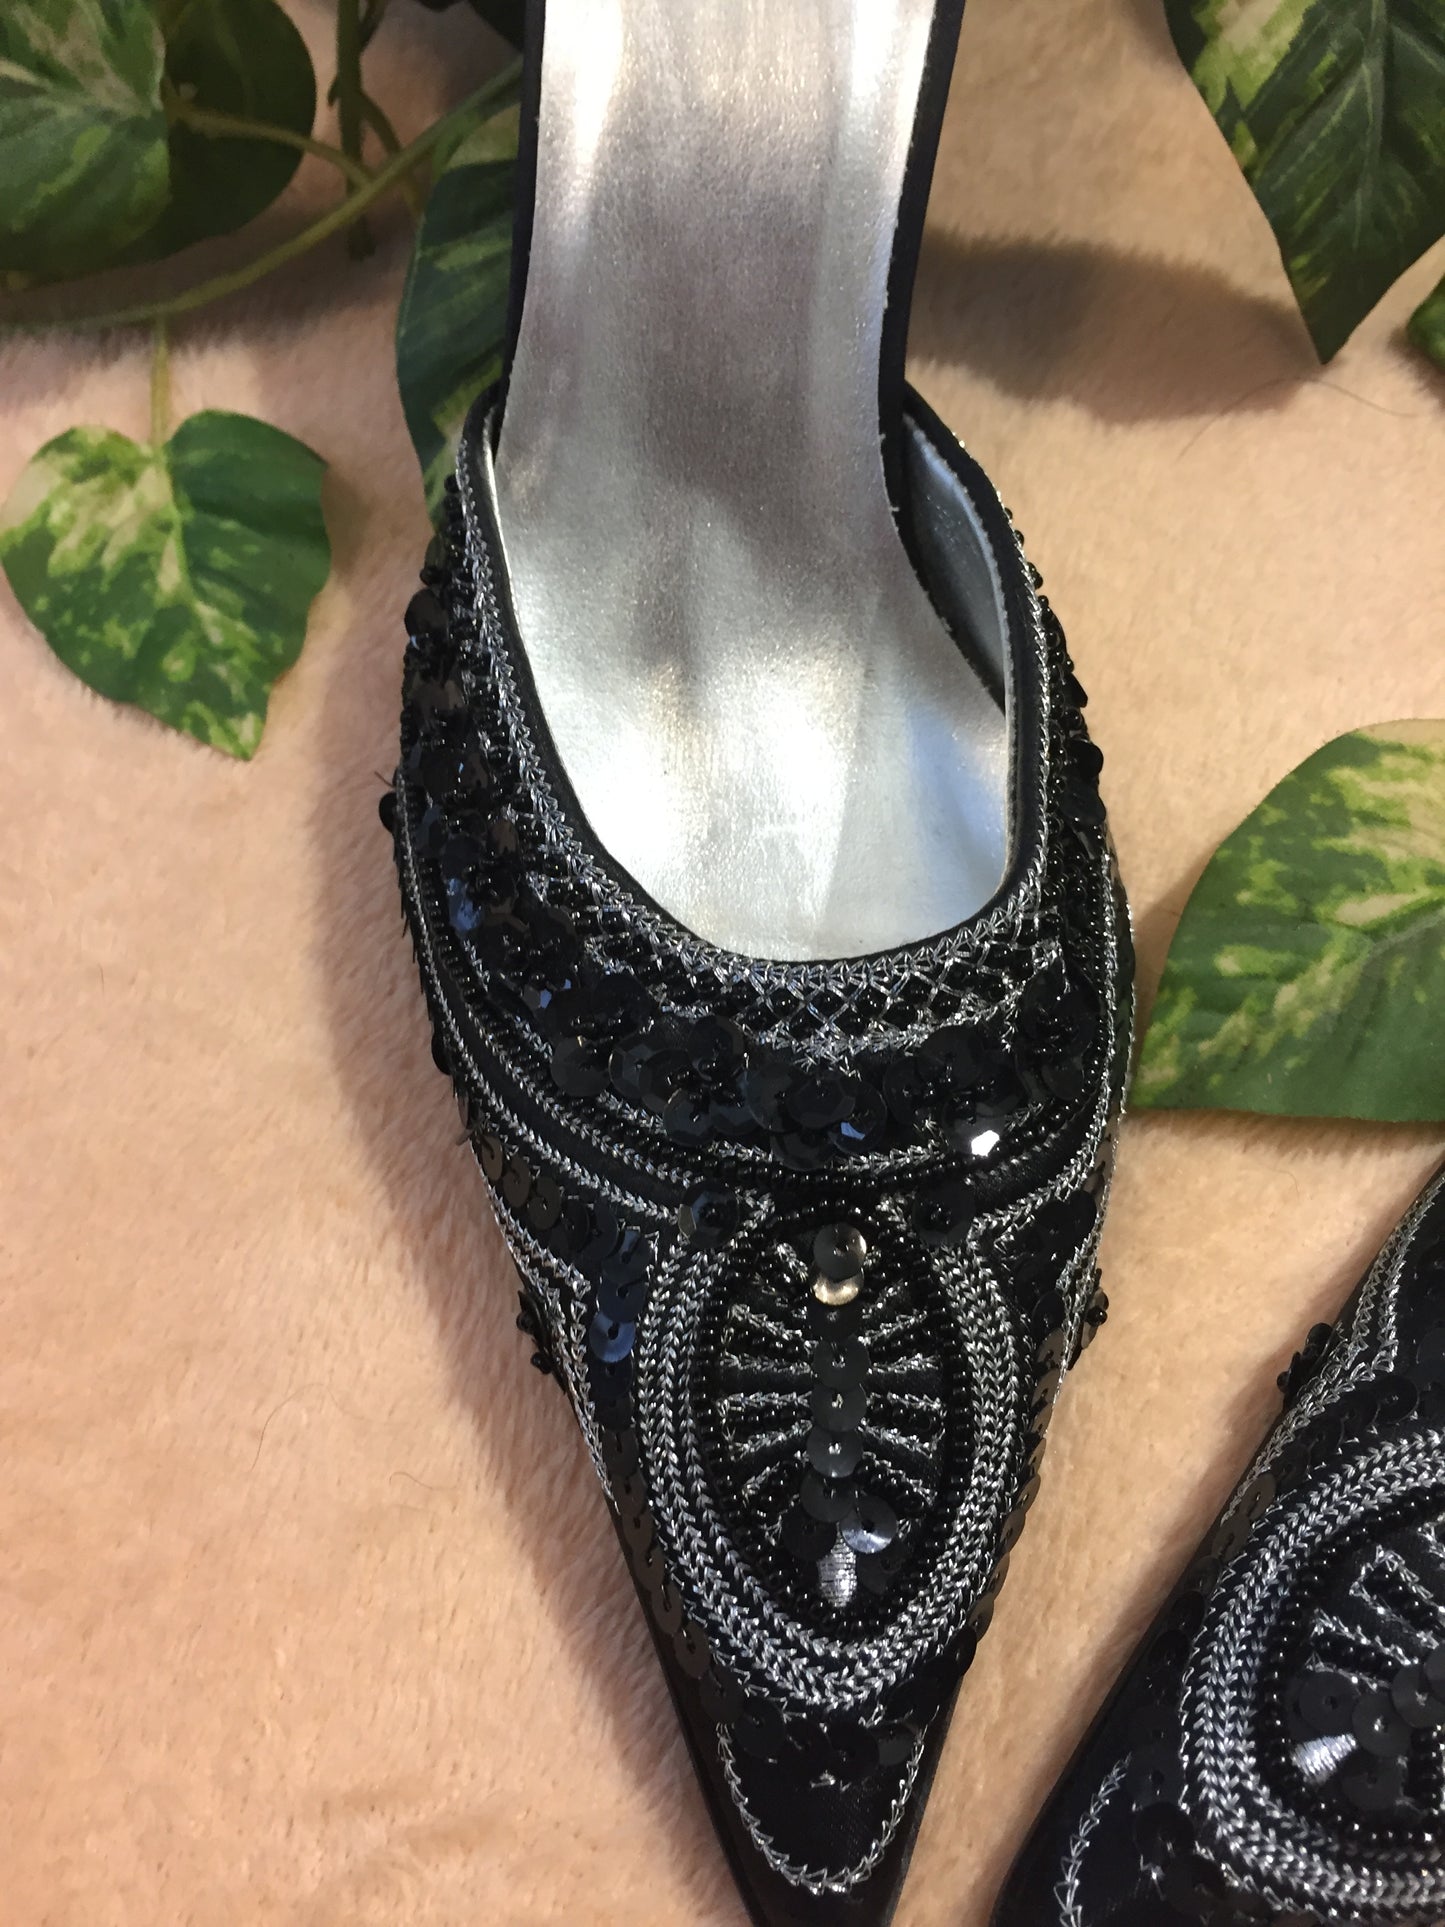 Splash Brand Embroidered Heels, Women's US Size 8